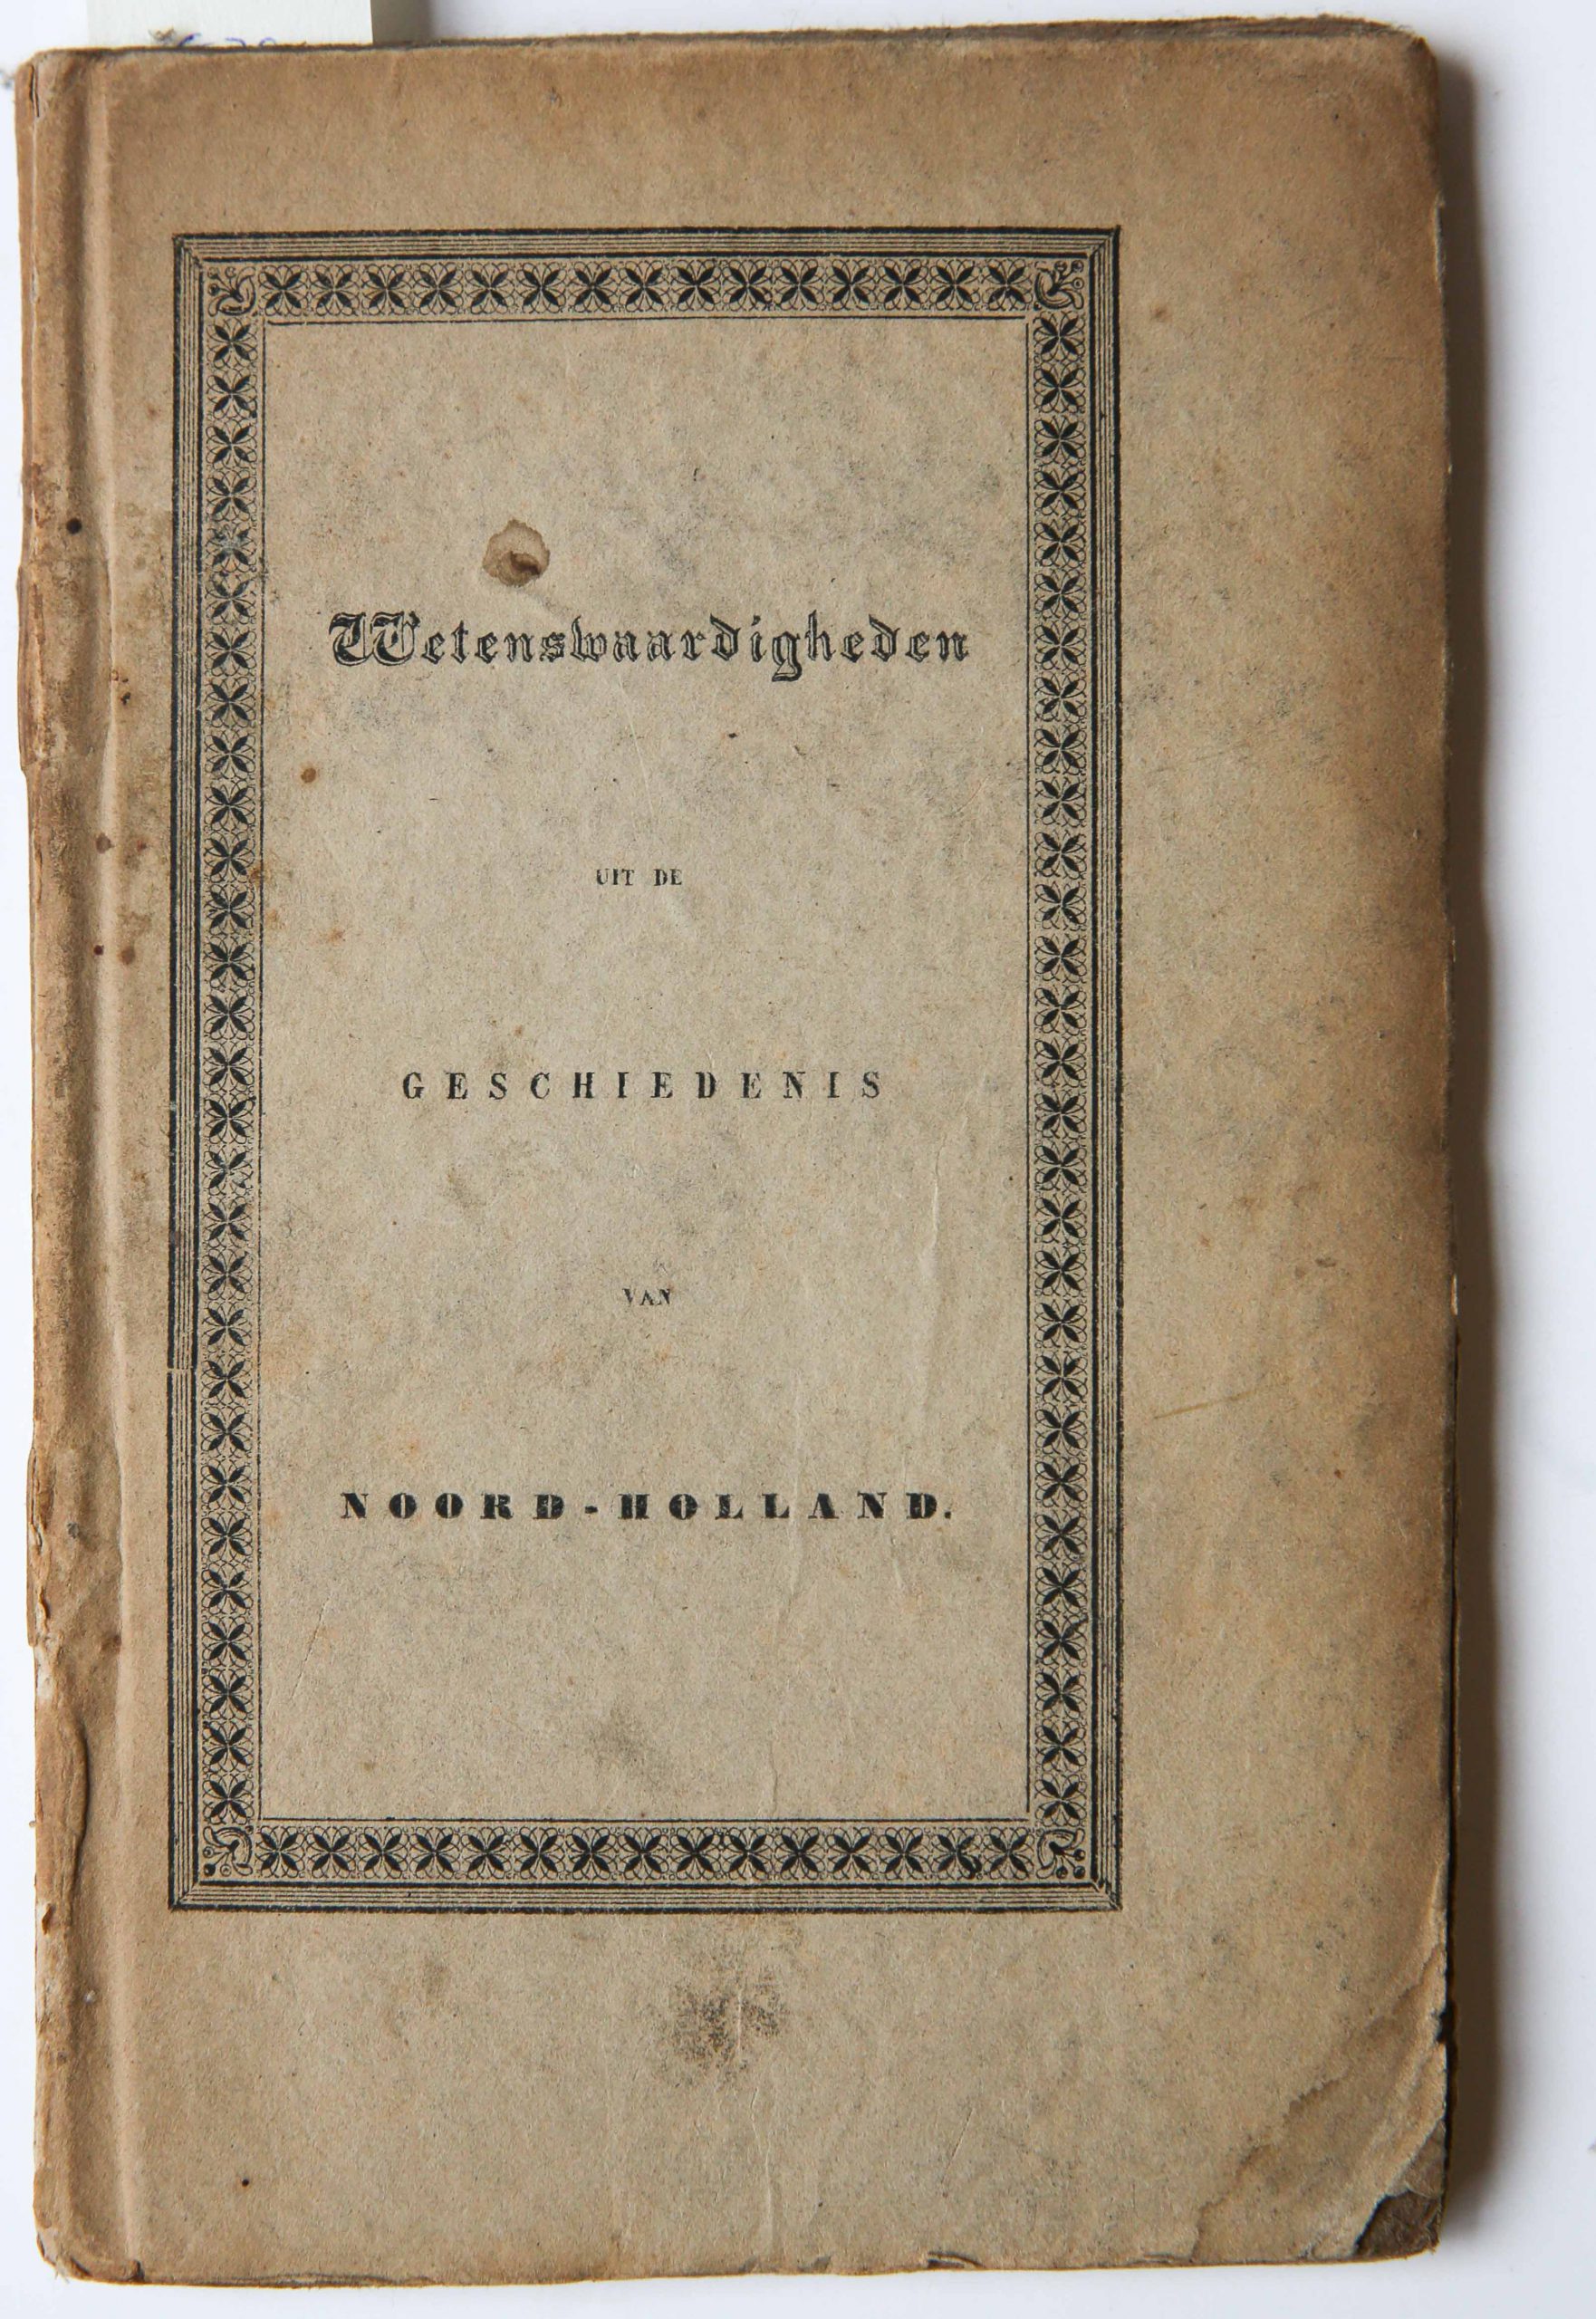 Wetenswaardigheden uit de geschiedenis van Noord-Holland, Hoorn, Vermande, 1843. With lithography of De Abdij van Egmond.